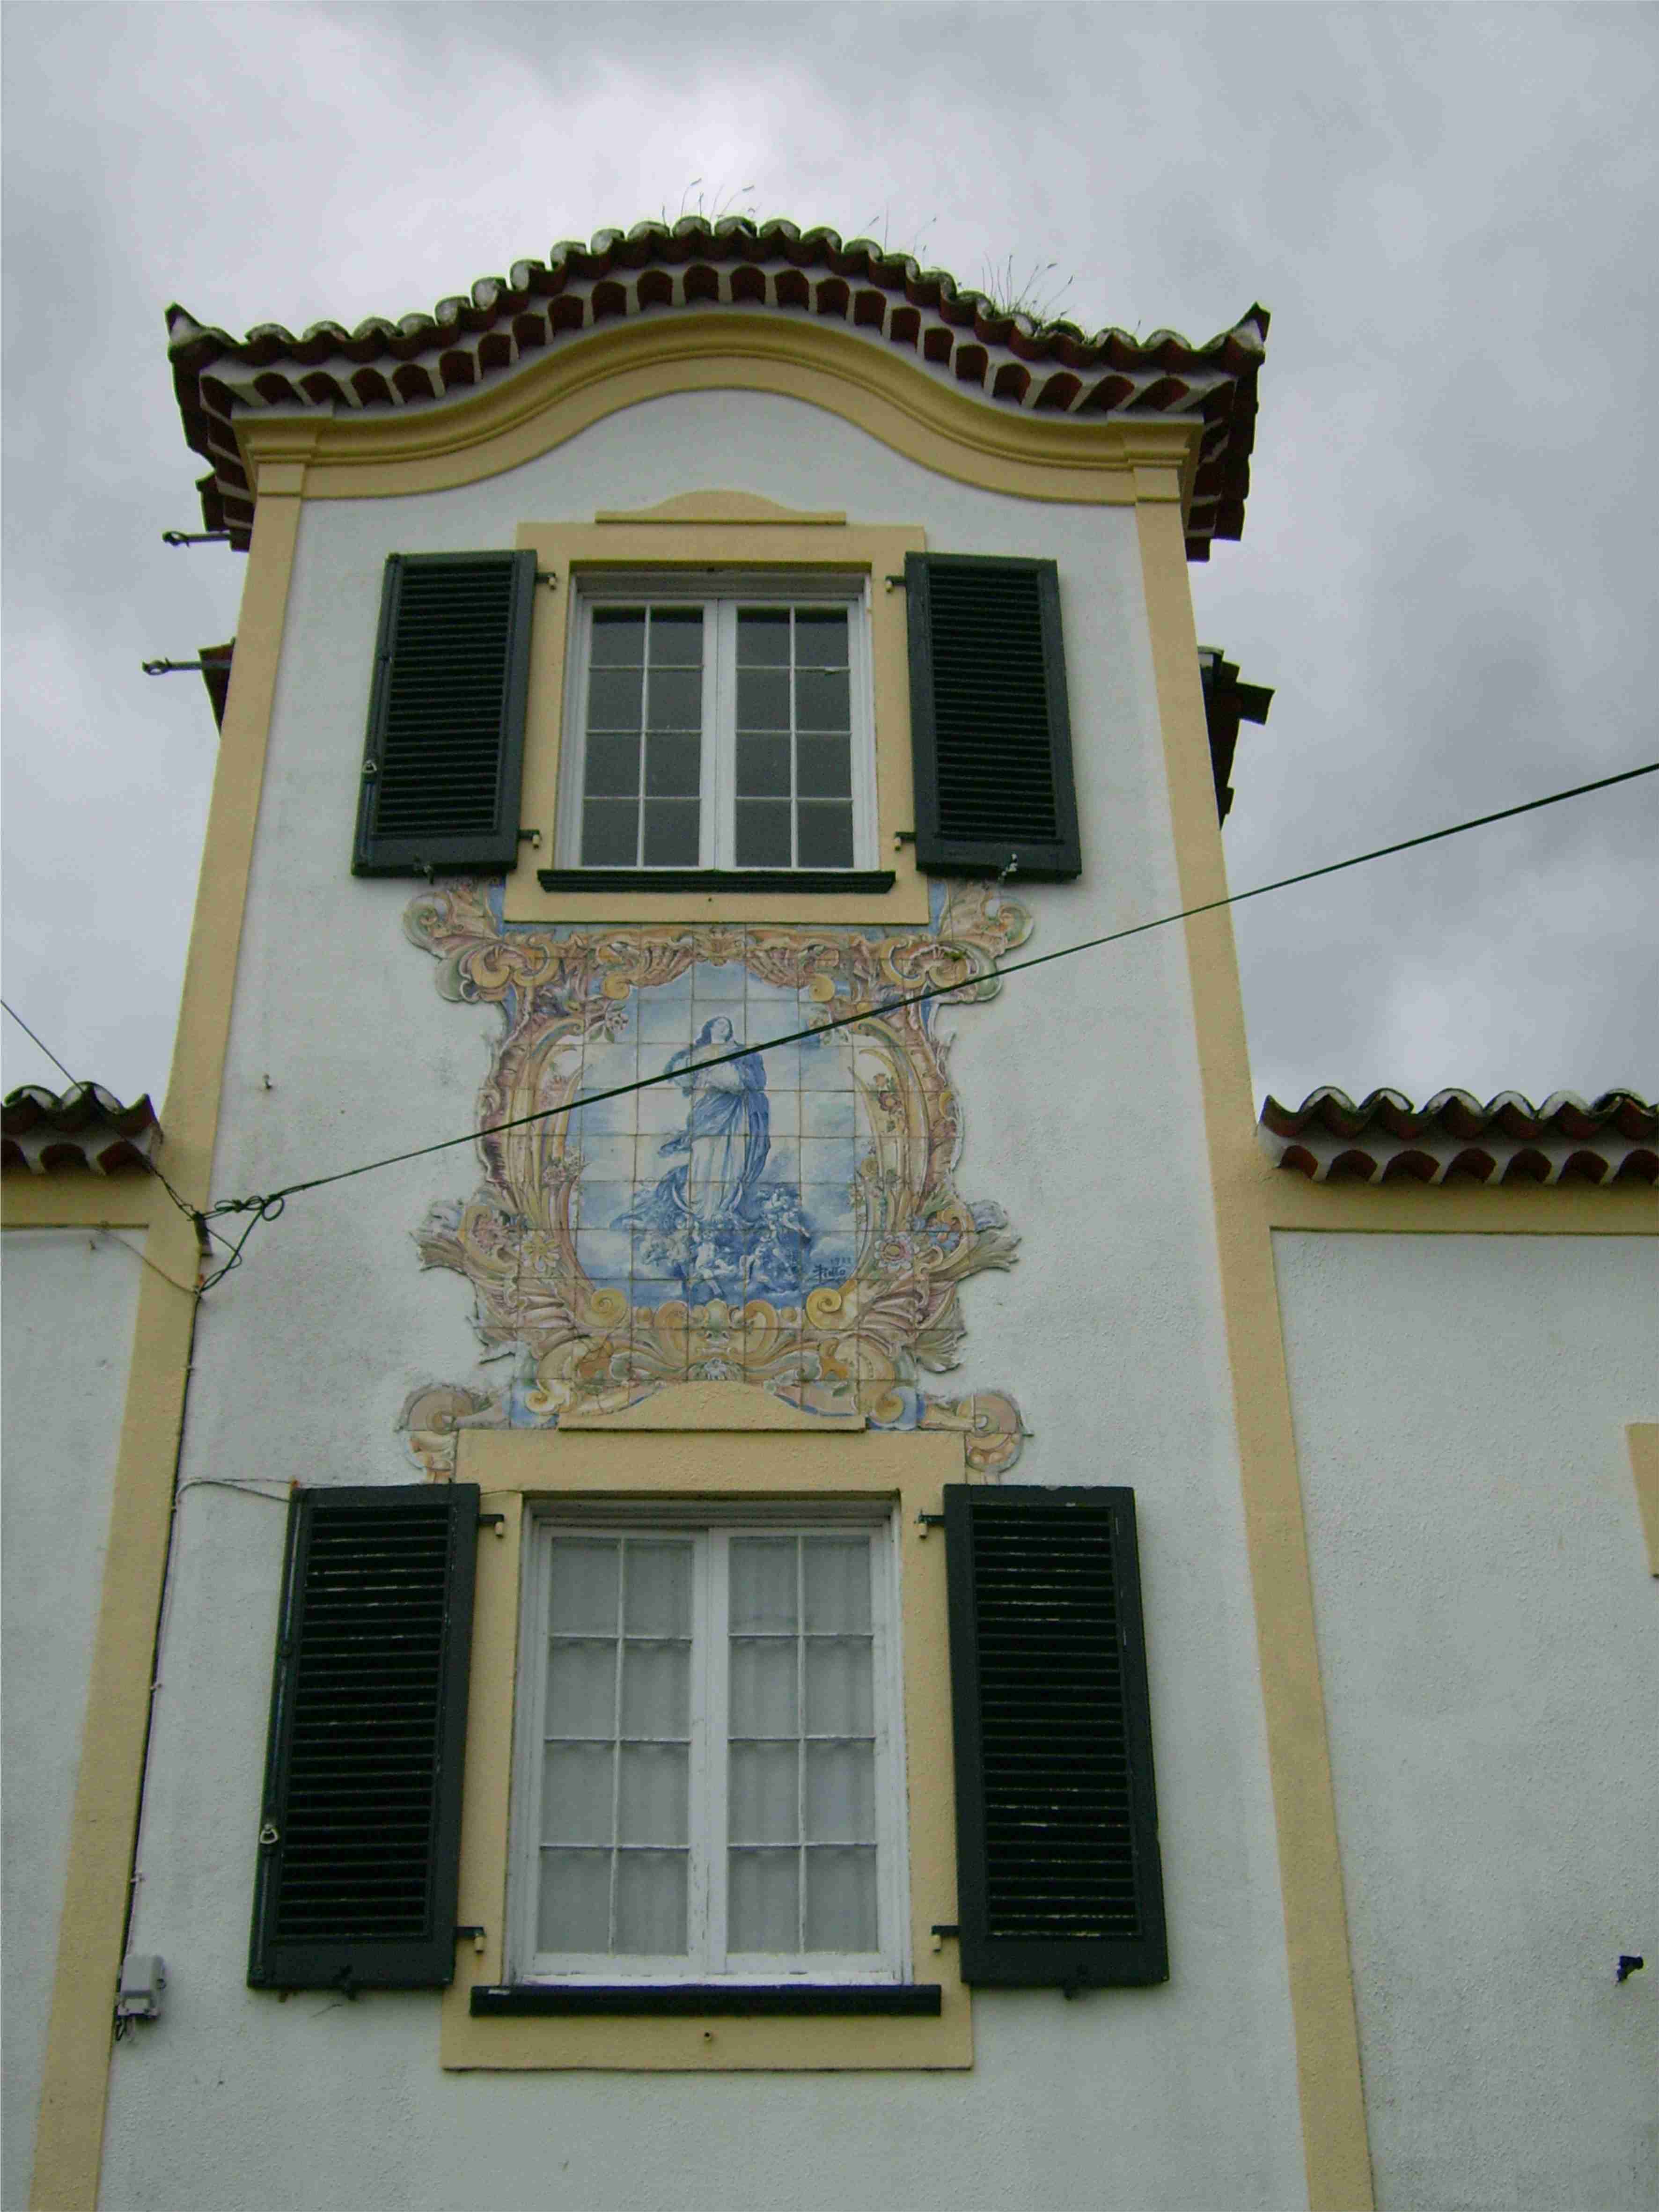 Levantamento planimétrico a Altimétrico de um Palacete Centenário - São Miguel - Açores